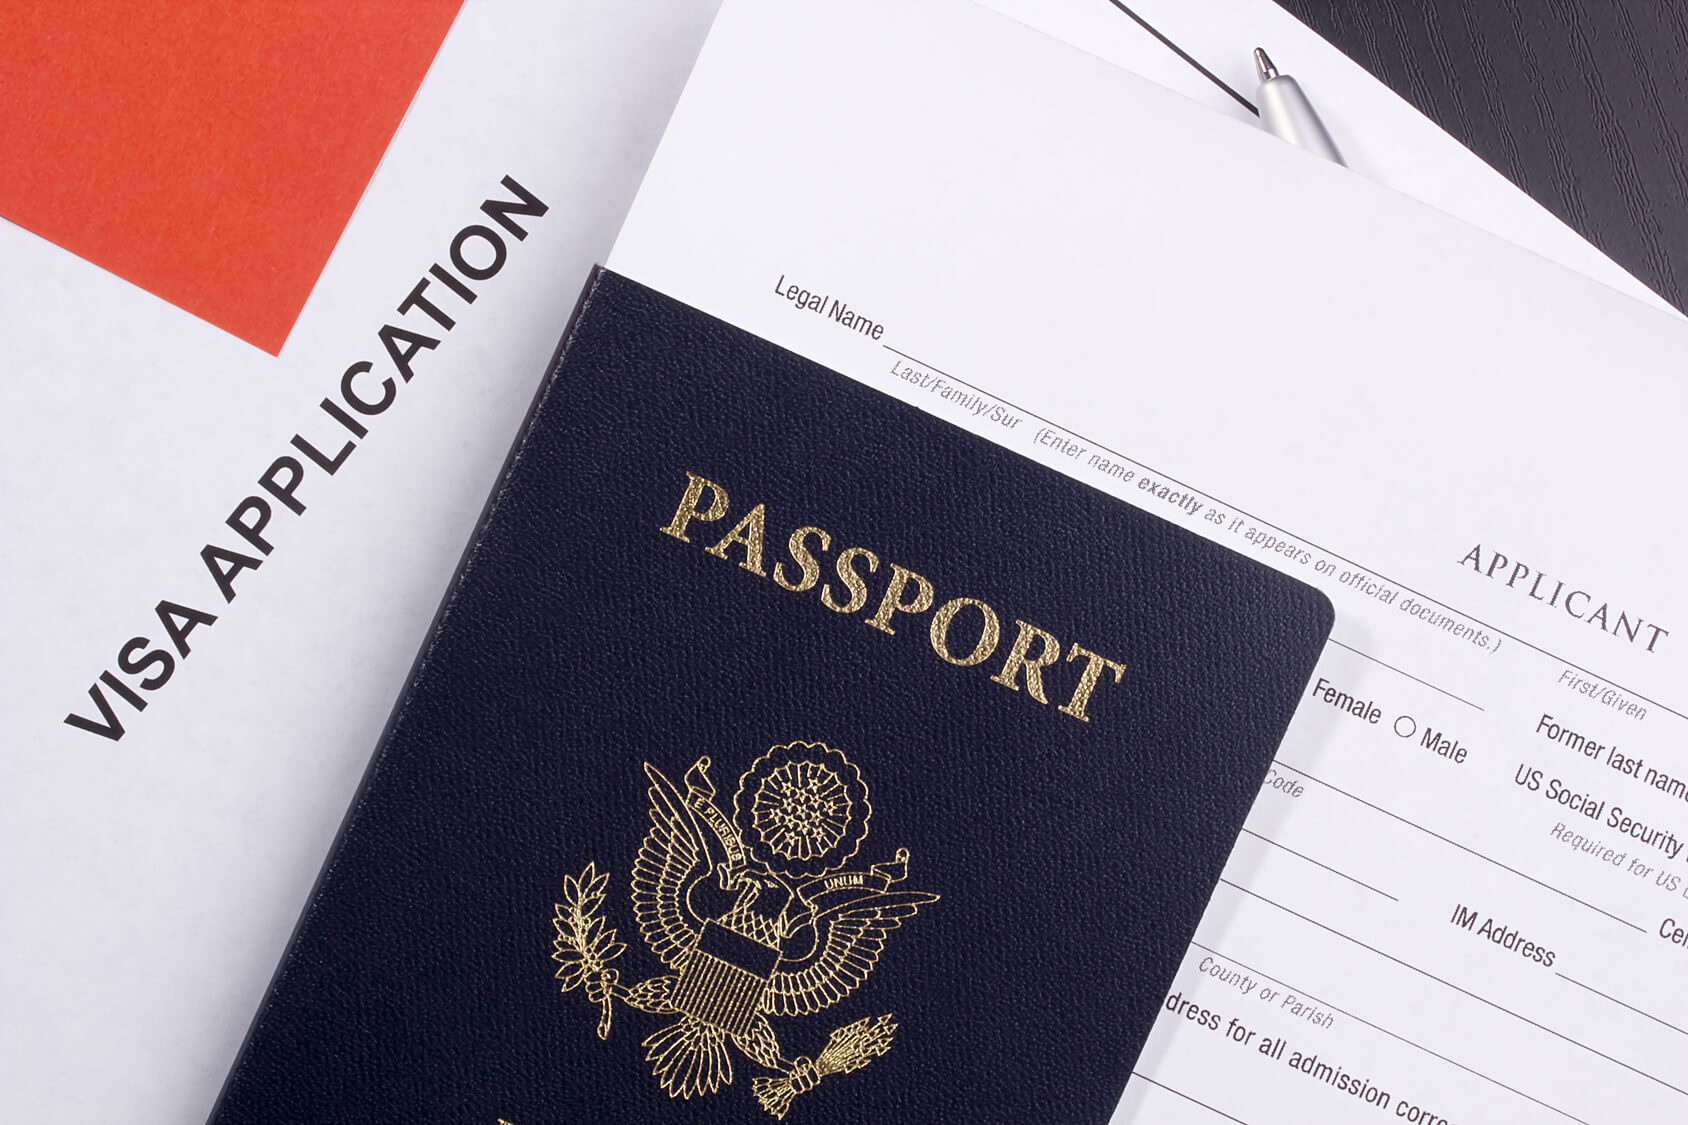 Dịch thuật hồ sơ xin visa